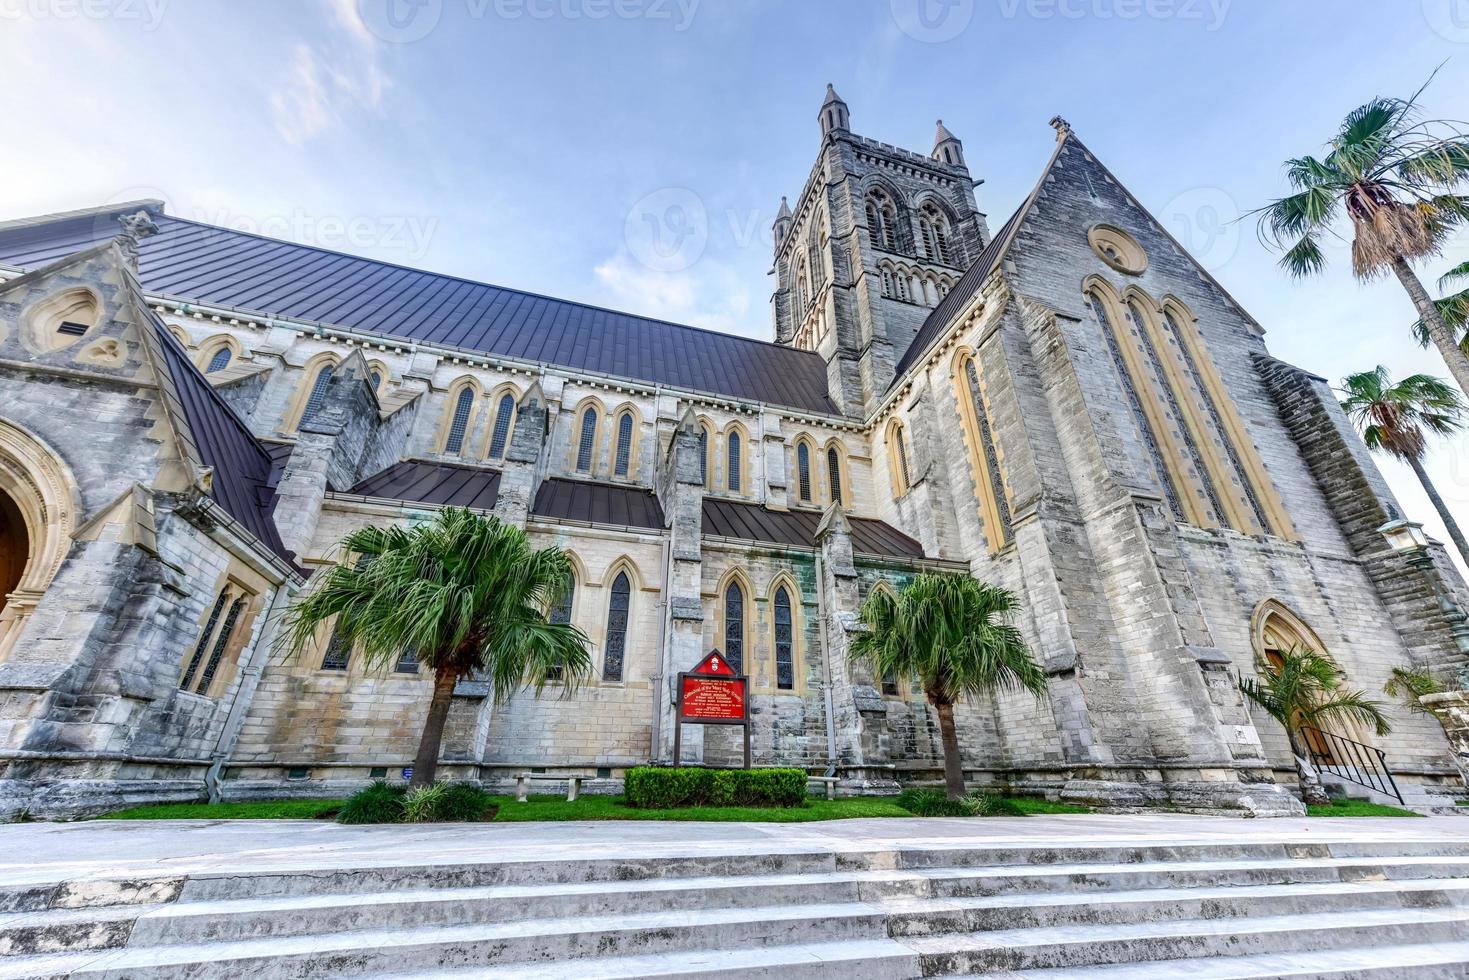 a catedral da santíssima trindade é uma catedral anglicana localizada na church street em hamilton, bermudas. foto